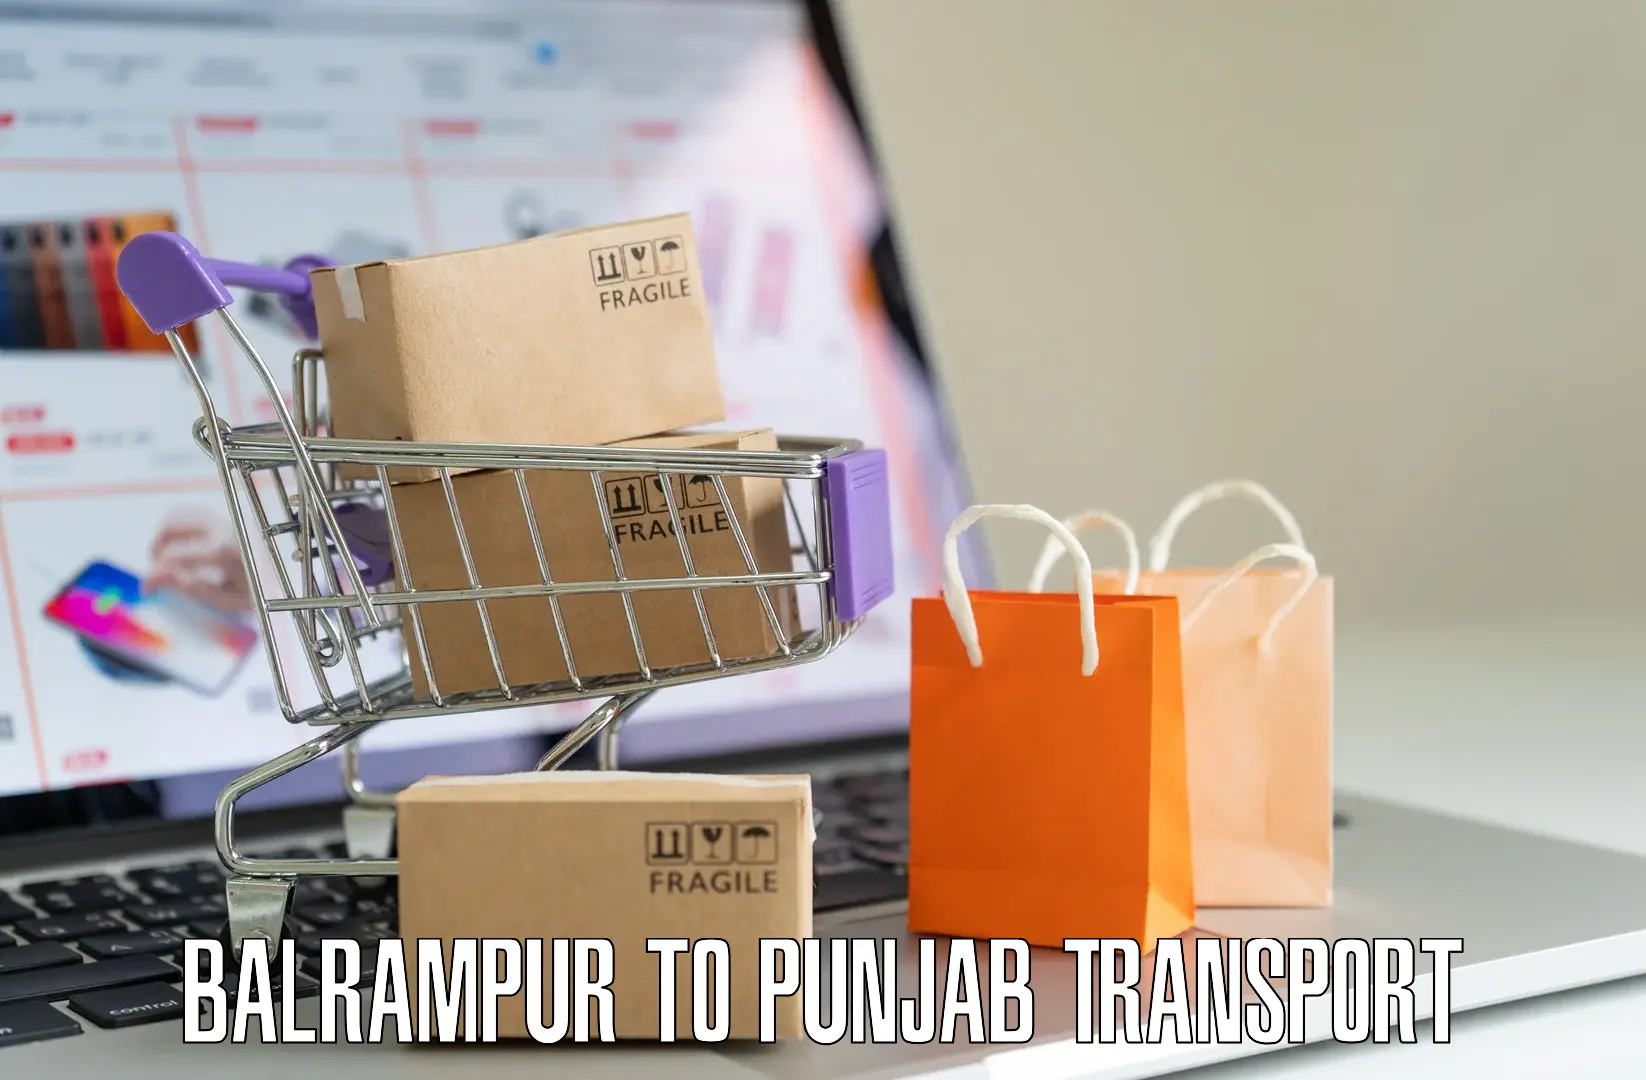 Vehicle parcel service Balrampur to Punjab